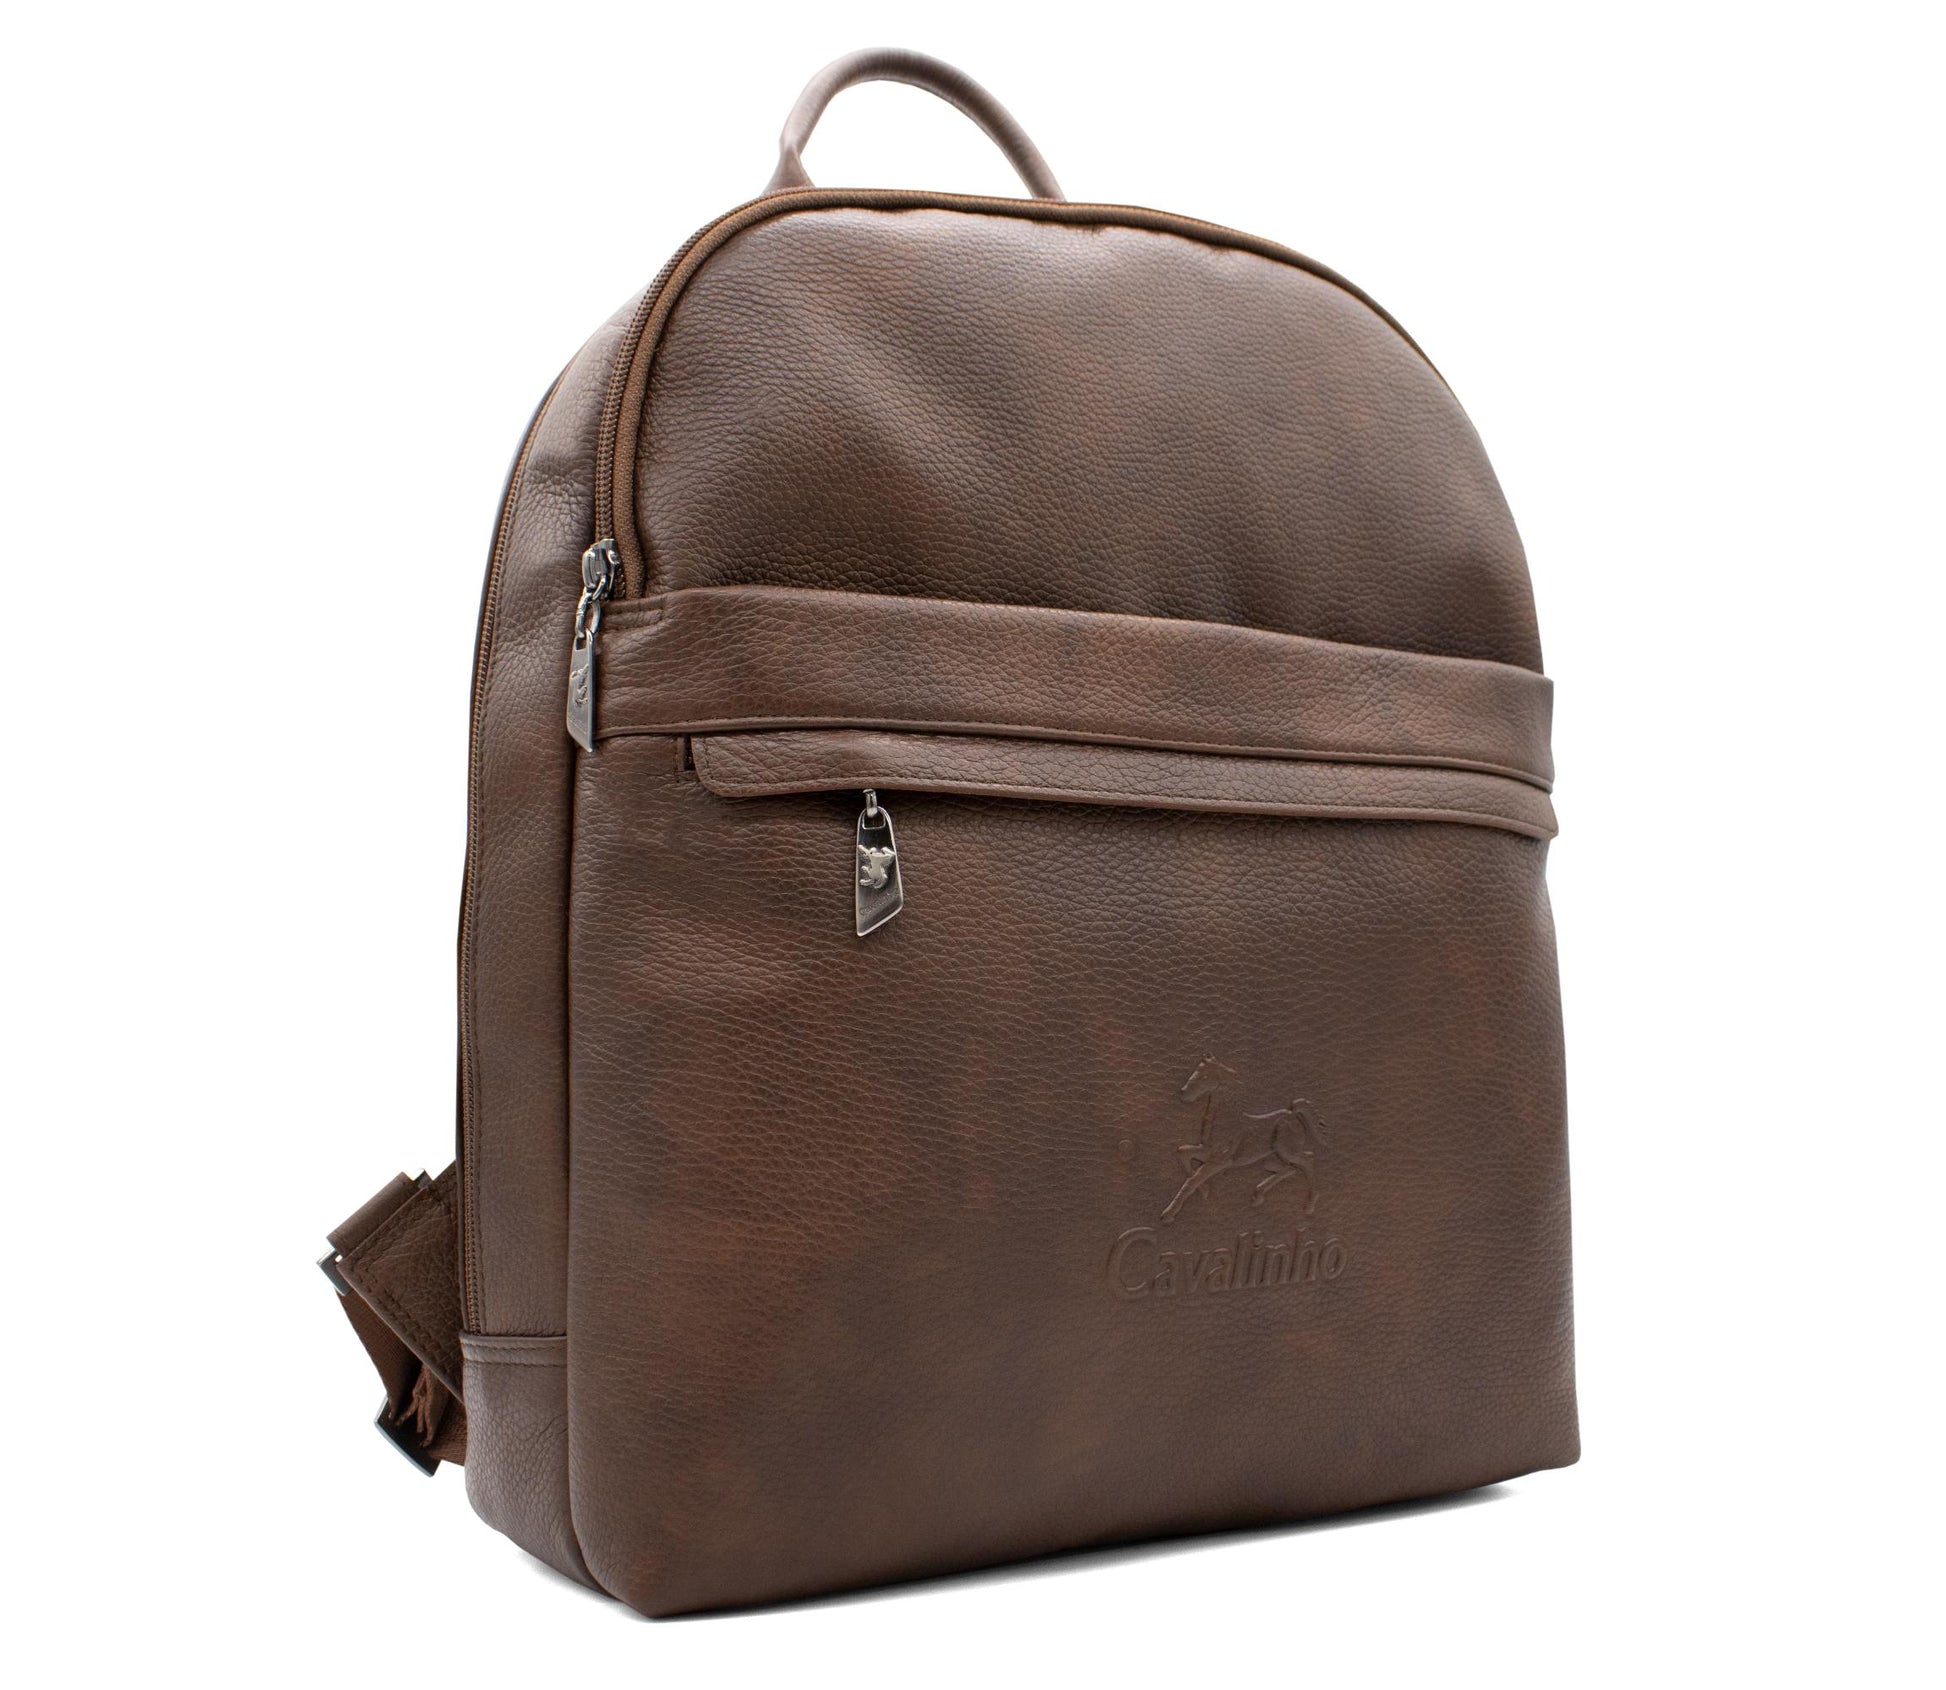 #color_ SaddleBrown | Cavalinho El Estribo Leather Backpack - SaddleBrown - 18040384.13_2